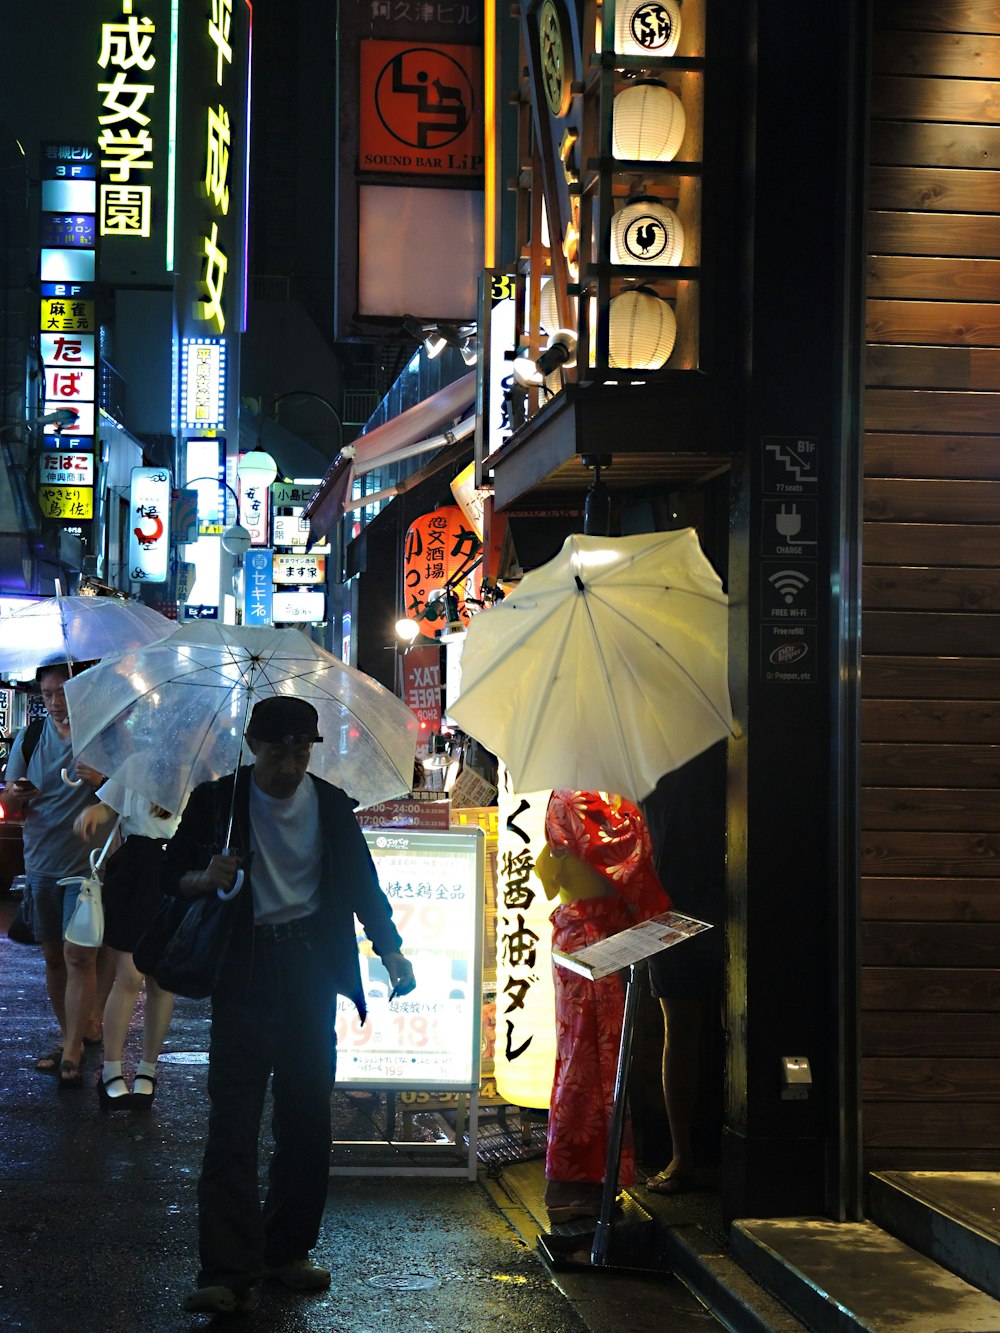 man in black jacket holding umbrella walking on street during nighttime